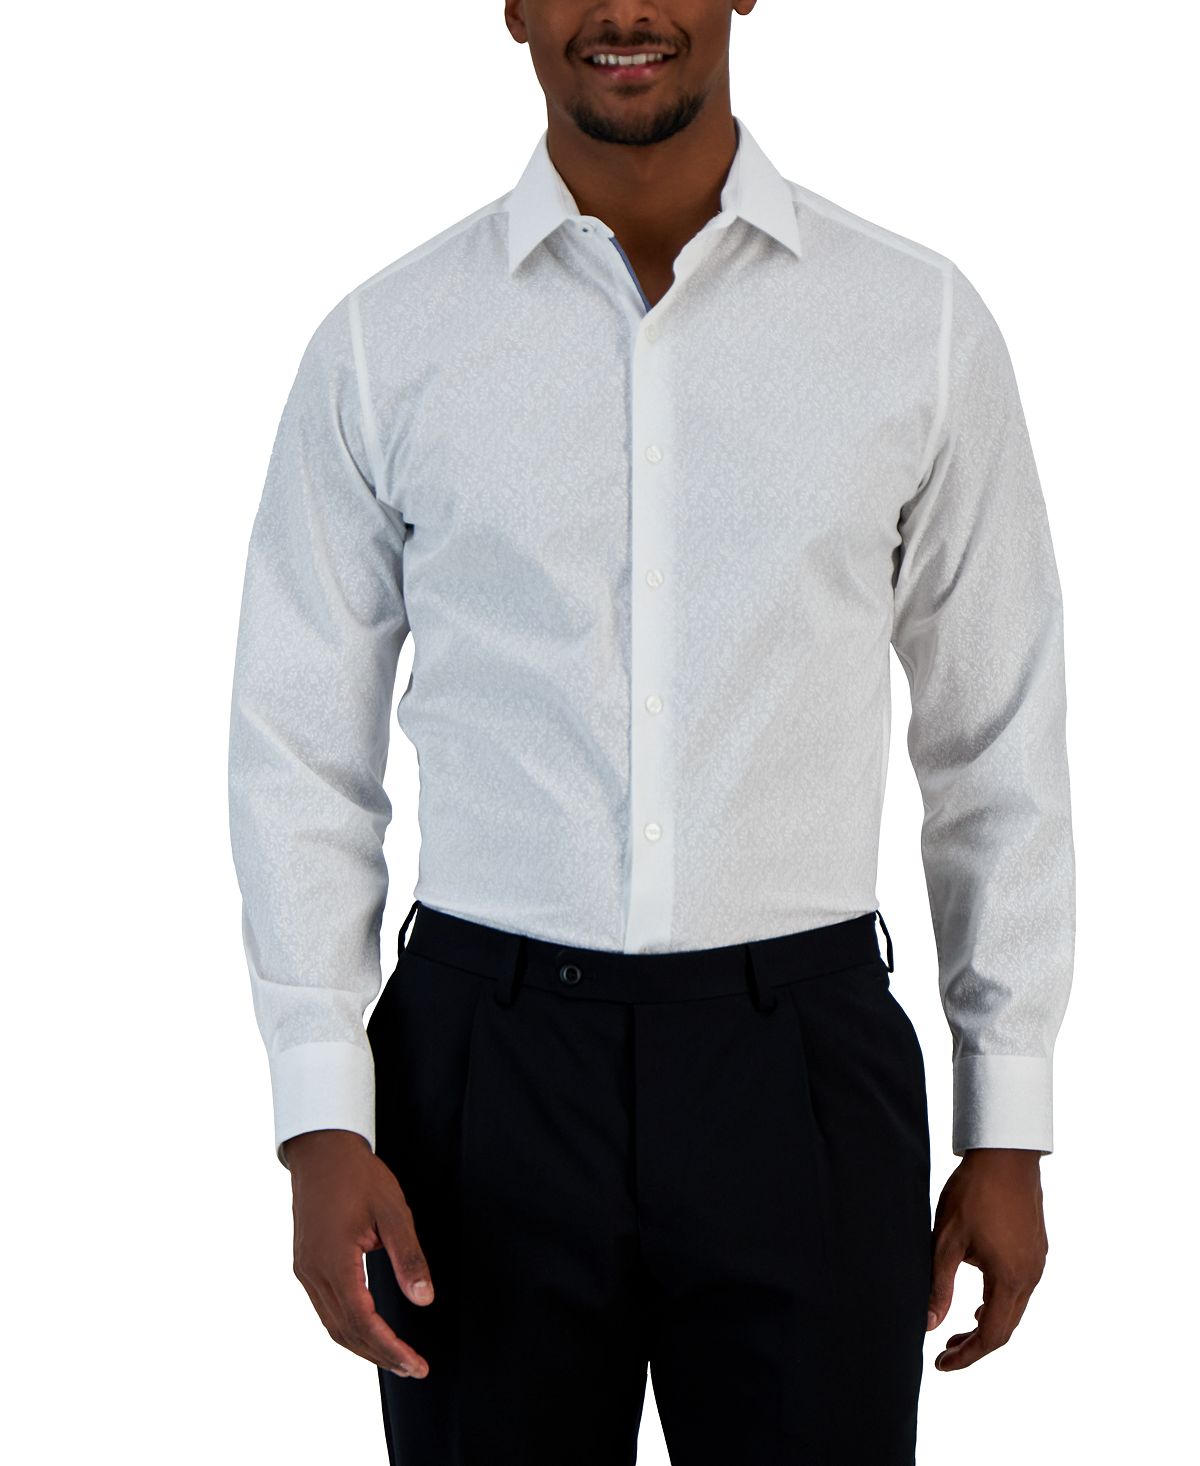 цена Мужская классическая рубашка узкого кроя с принтом виноградной лозы Bar III